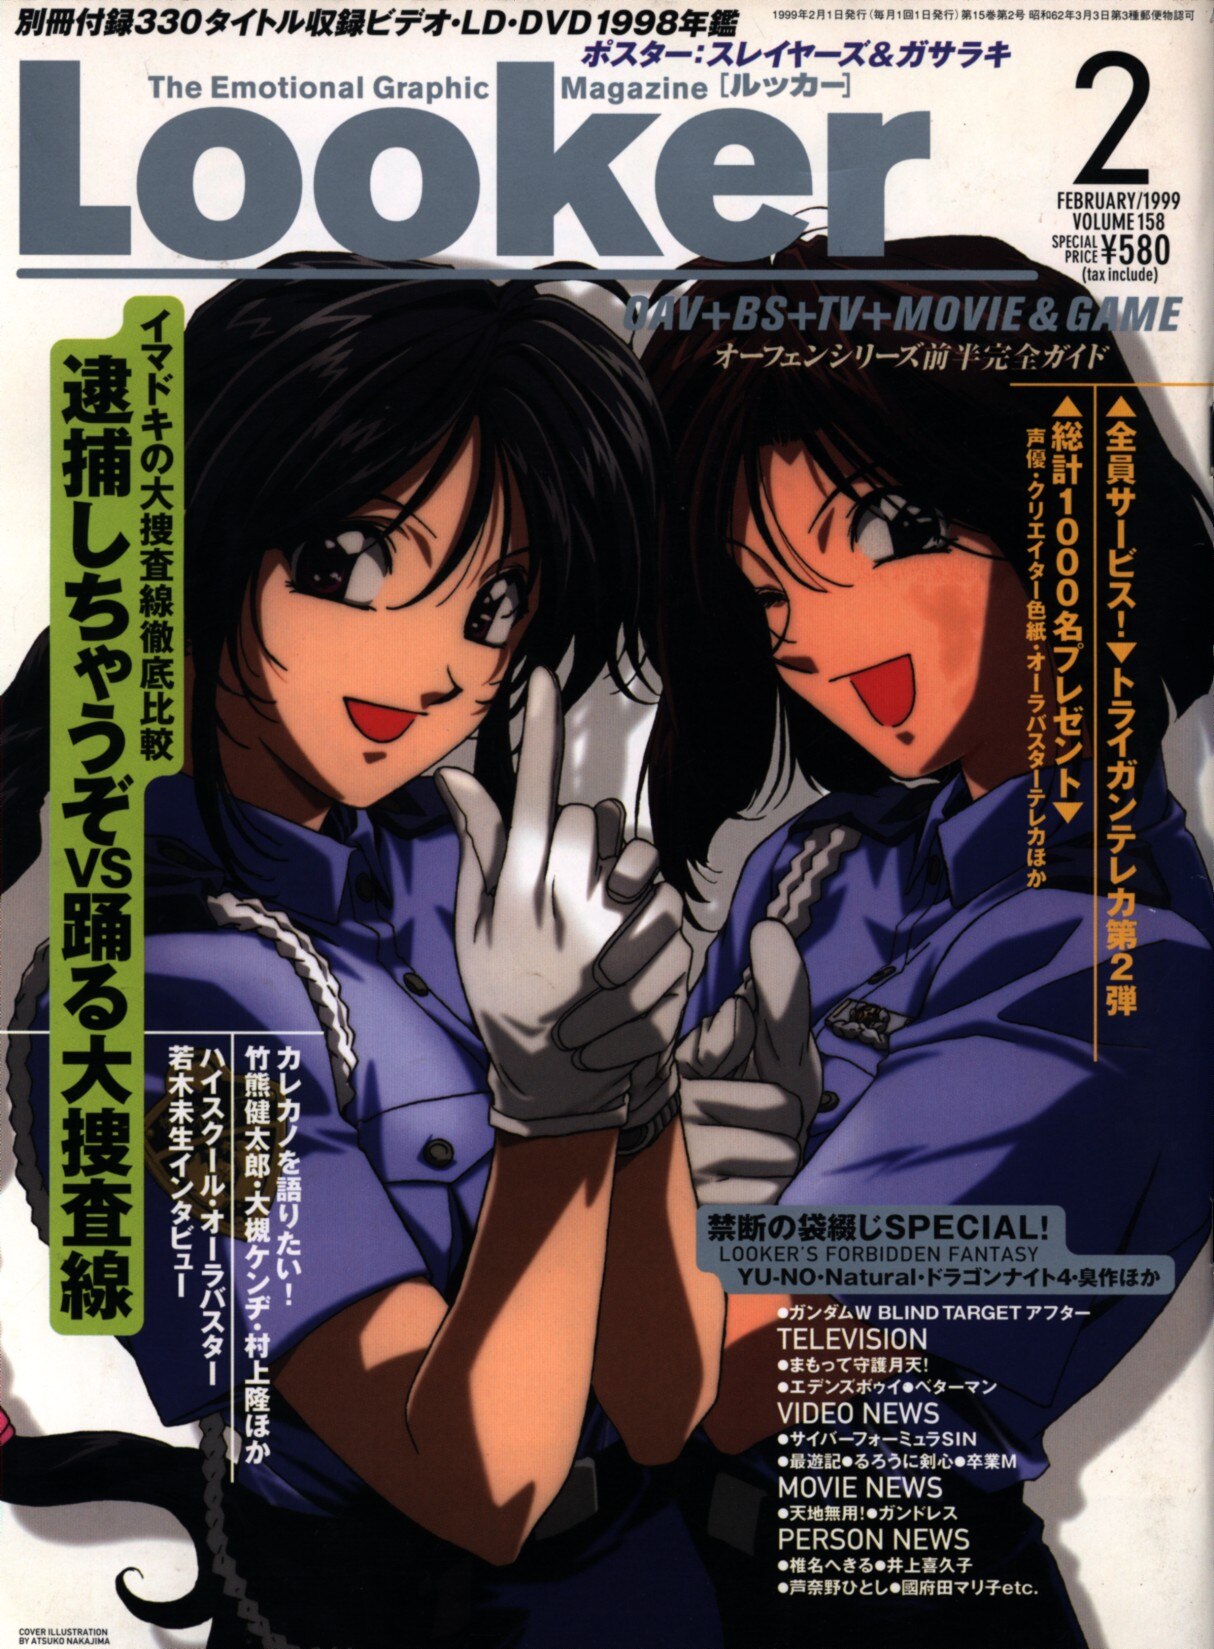 学習研究社 1999年 平成11年 のアニメ雑誌 本誌のみ Looker 1999年2月号 9902 まんだらけ Mandarake